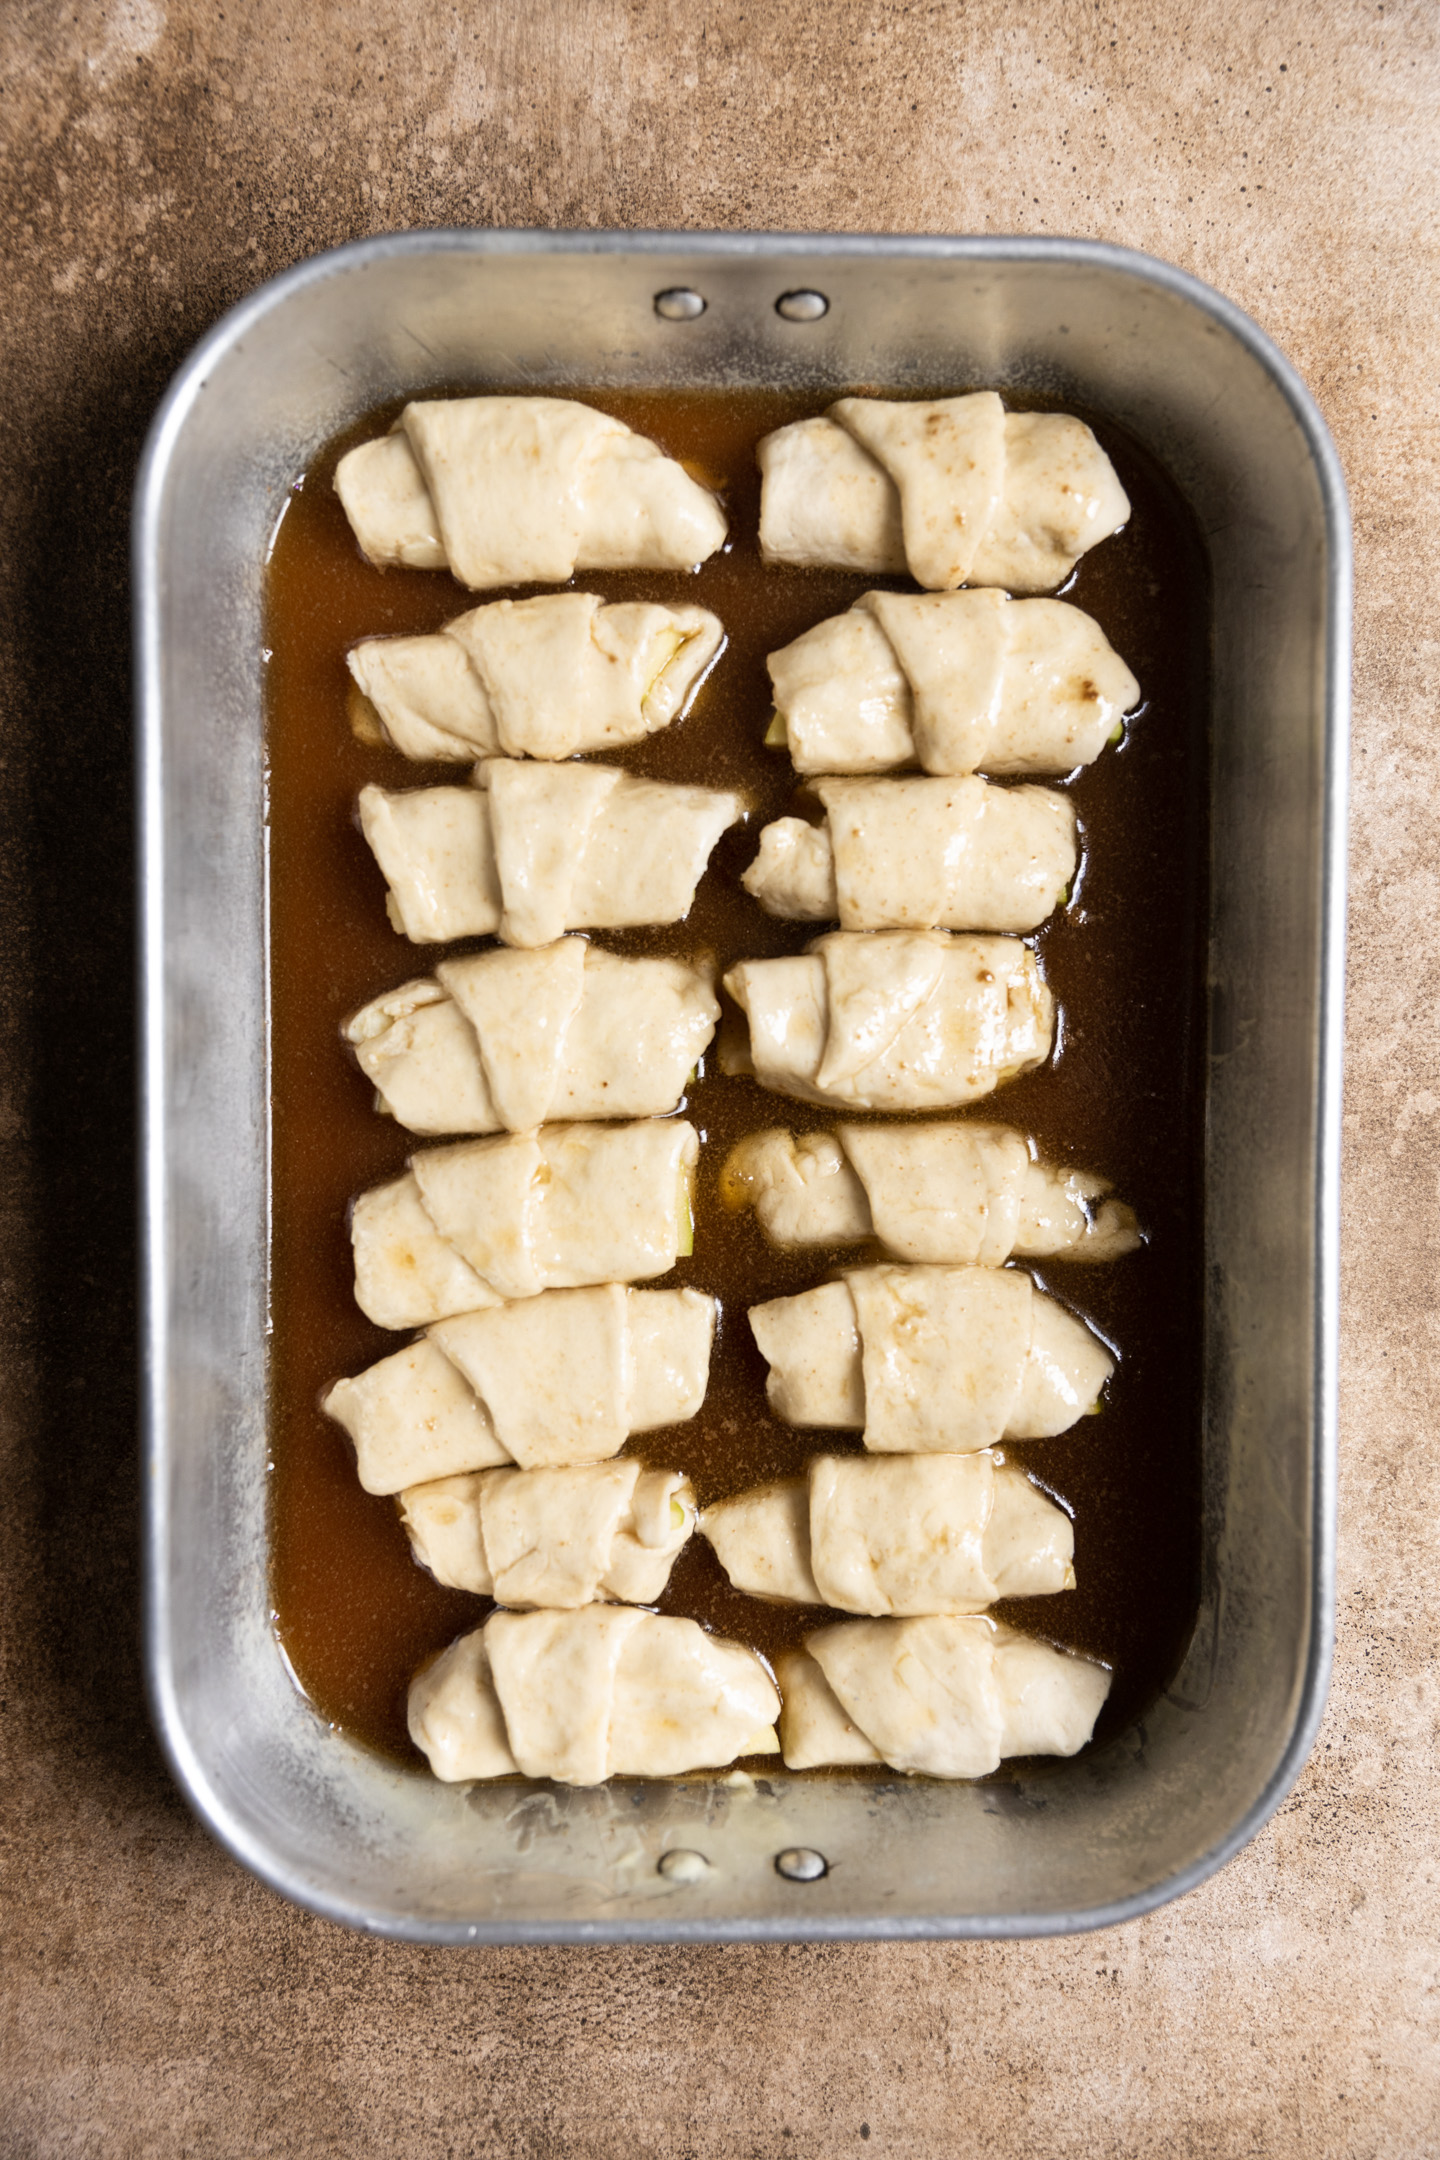 Unbaked apple dumplings in a sweet sauce in a 9x13 pan.